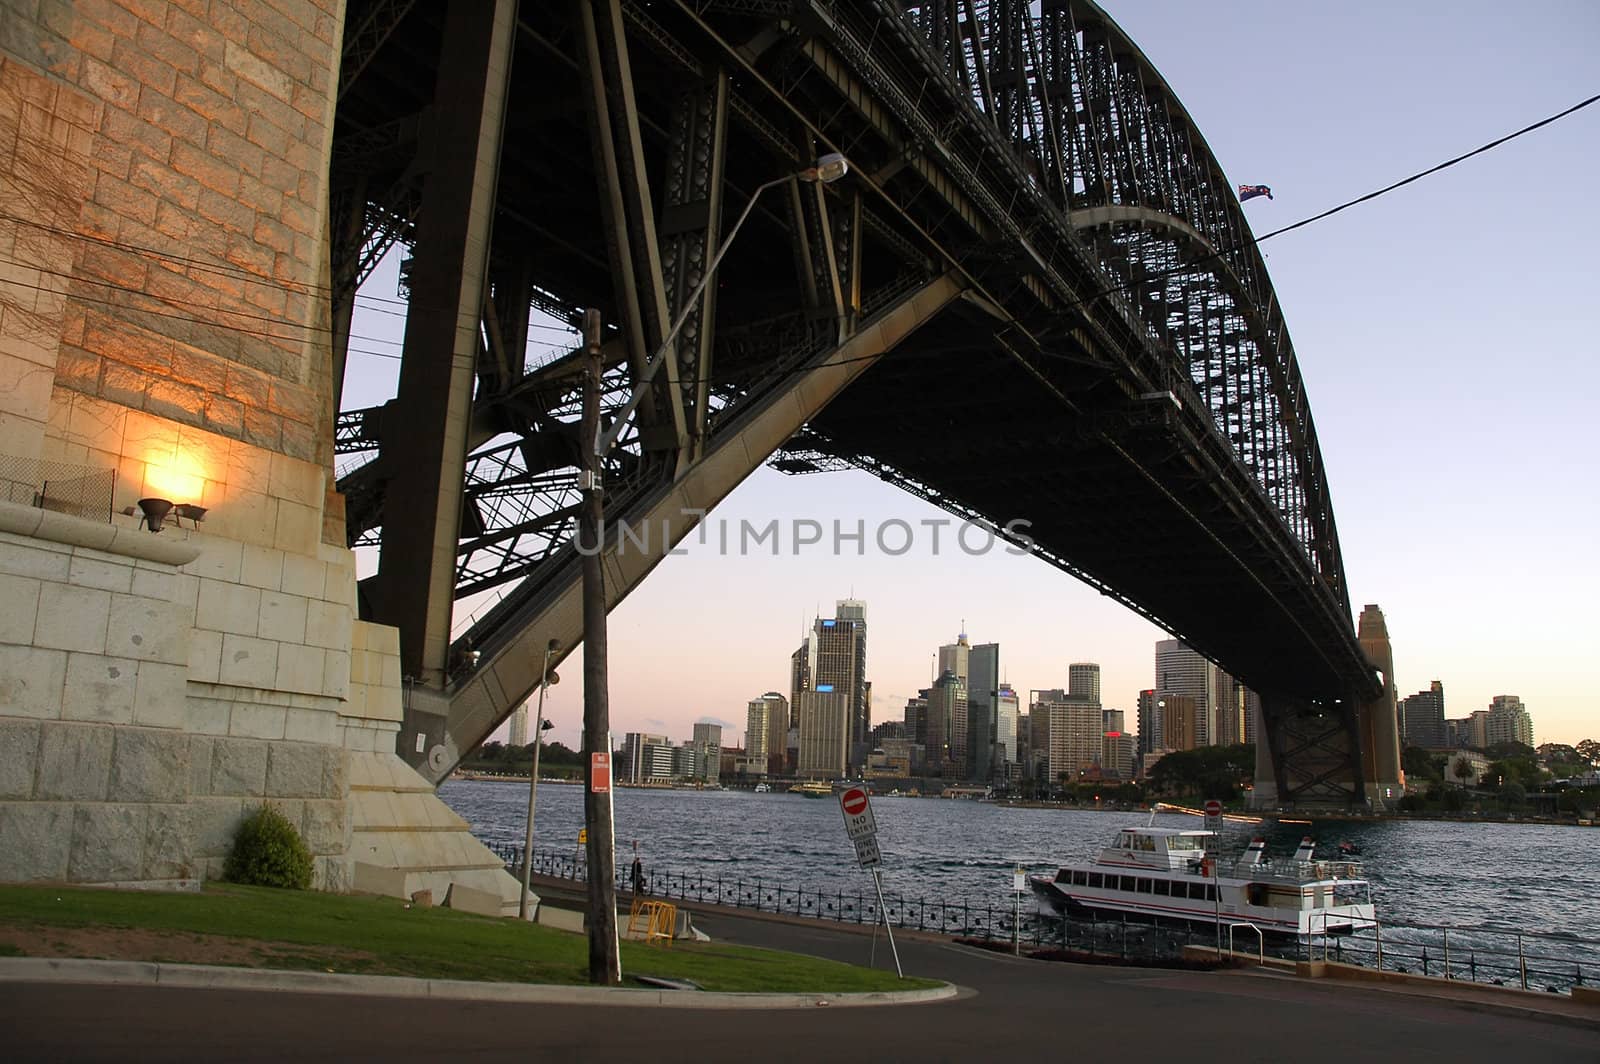 ferry under Harbour Bridge in Sydney, CBD in background